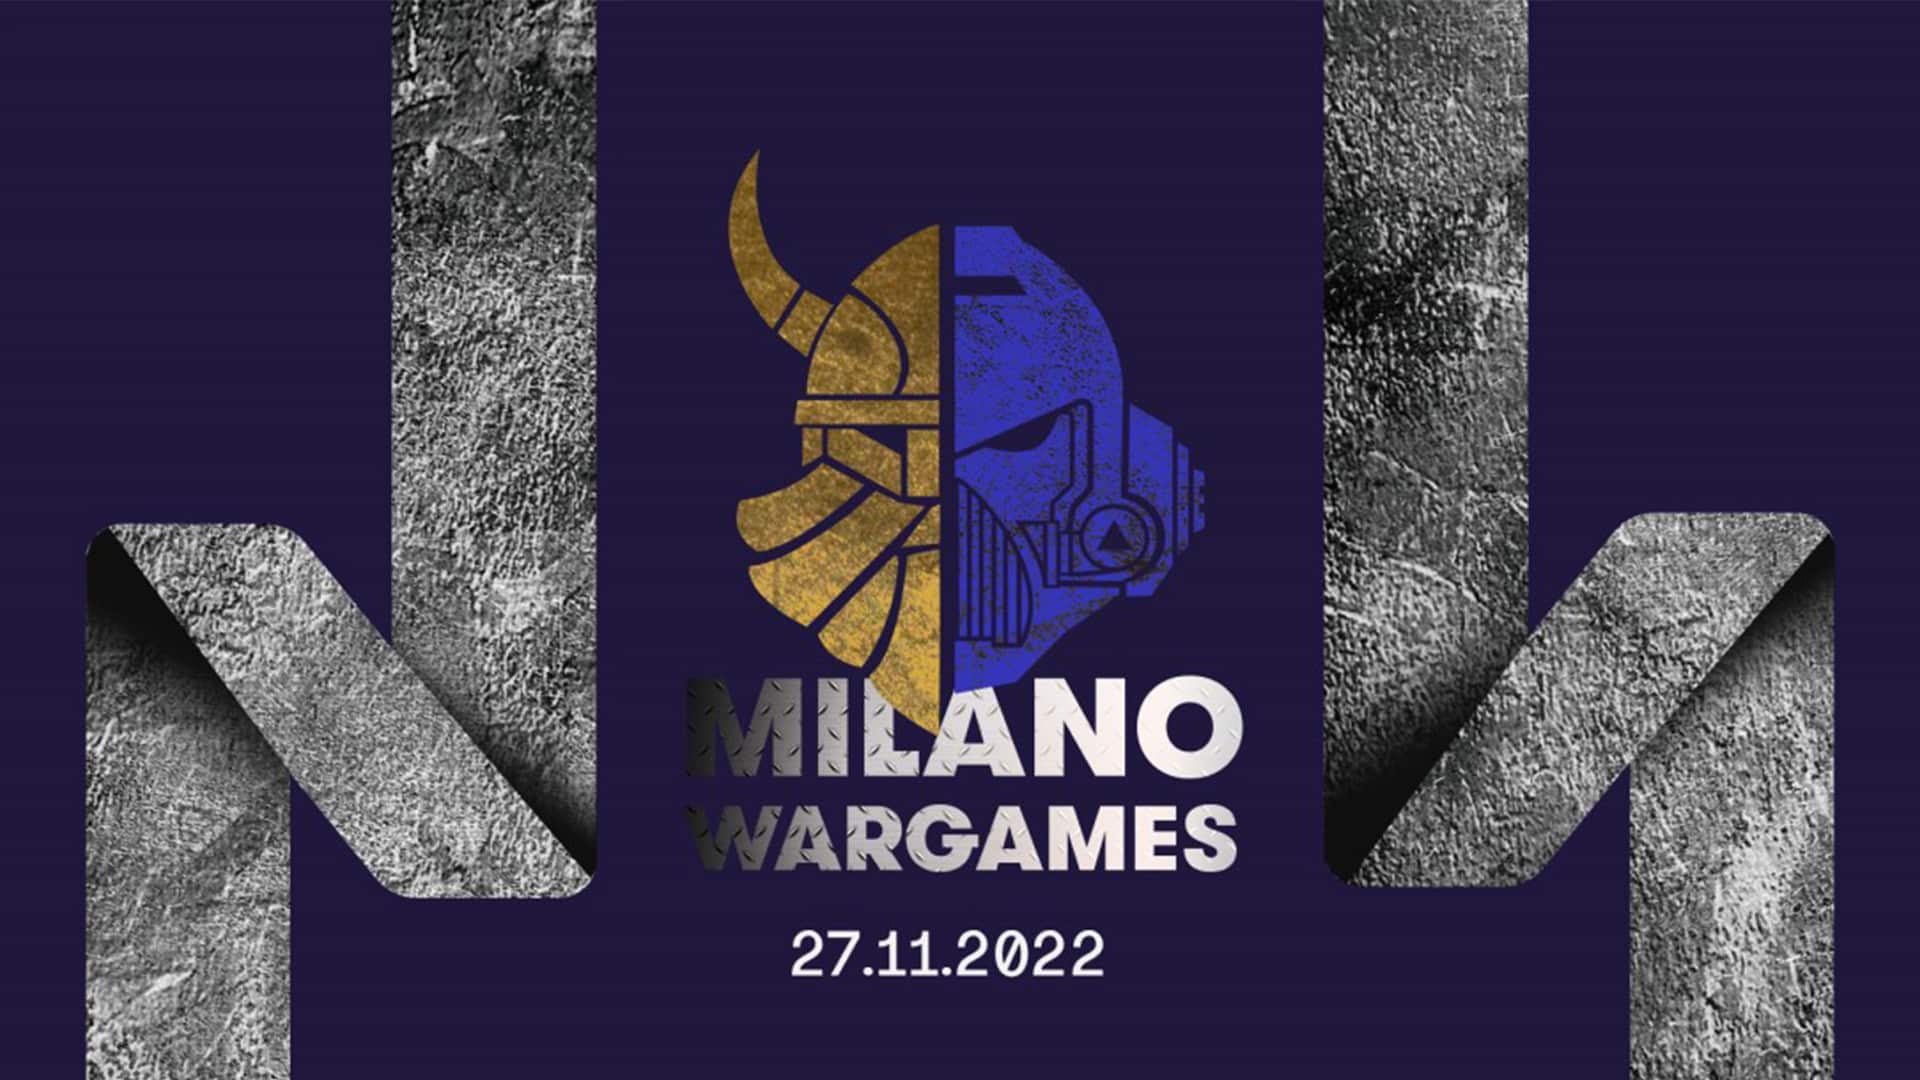 Milano Wargames 2022: il 27 novembre a Milano